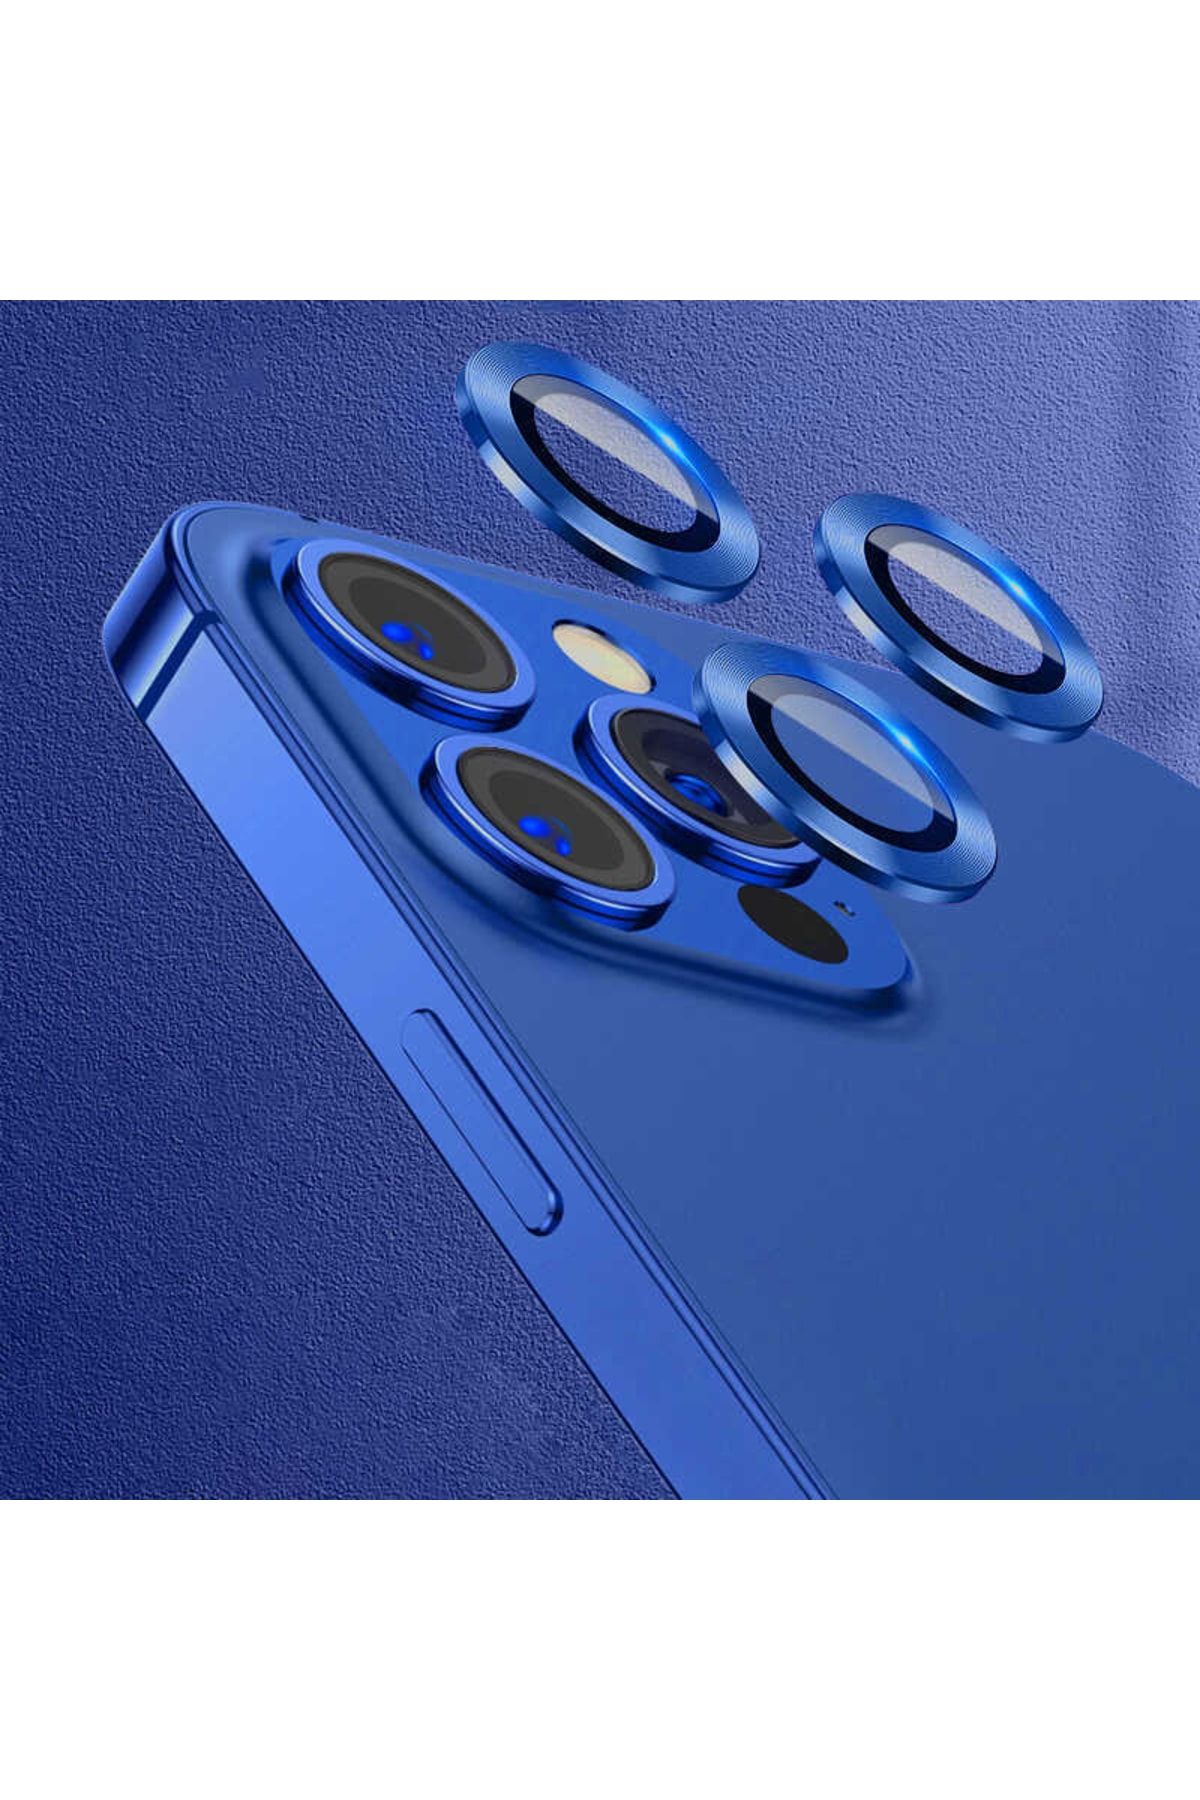 UnDePlus Iphone 11 Pro Max Uyumlu Kamera Lens Koruyucu Çerçeveli Koruyucu Cl-07